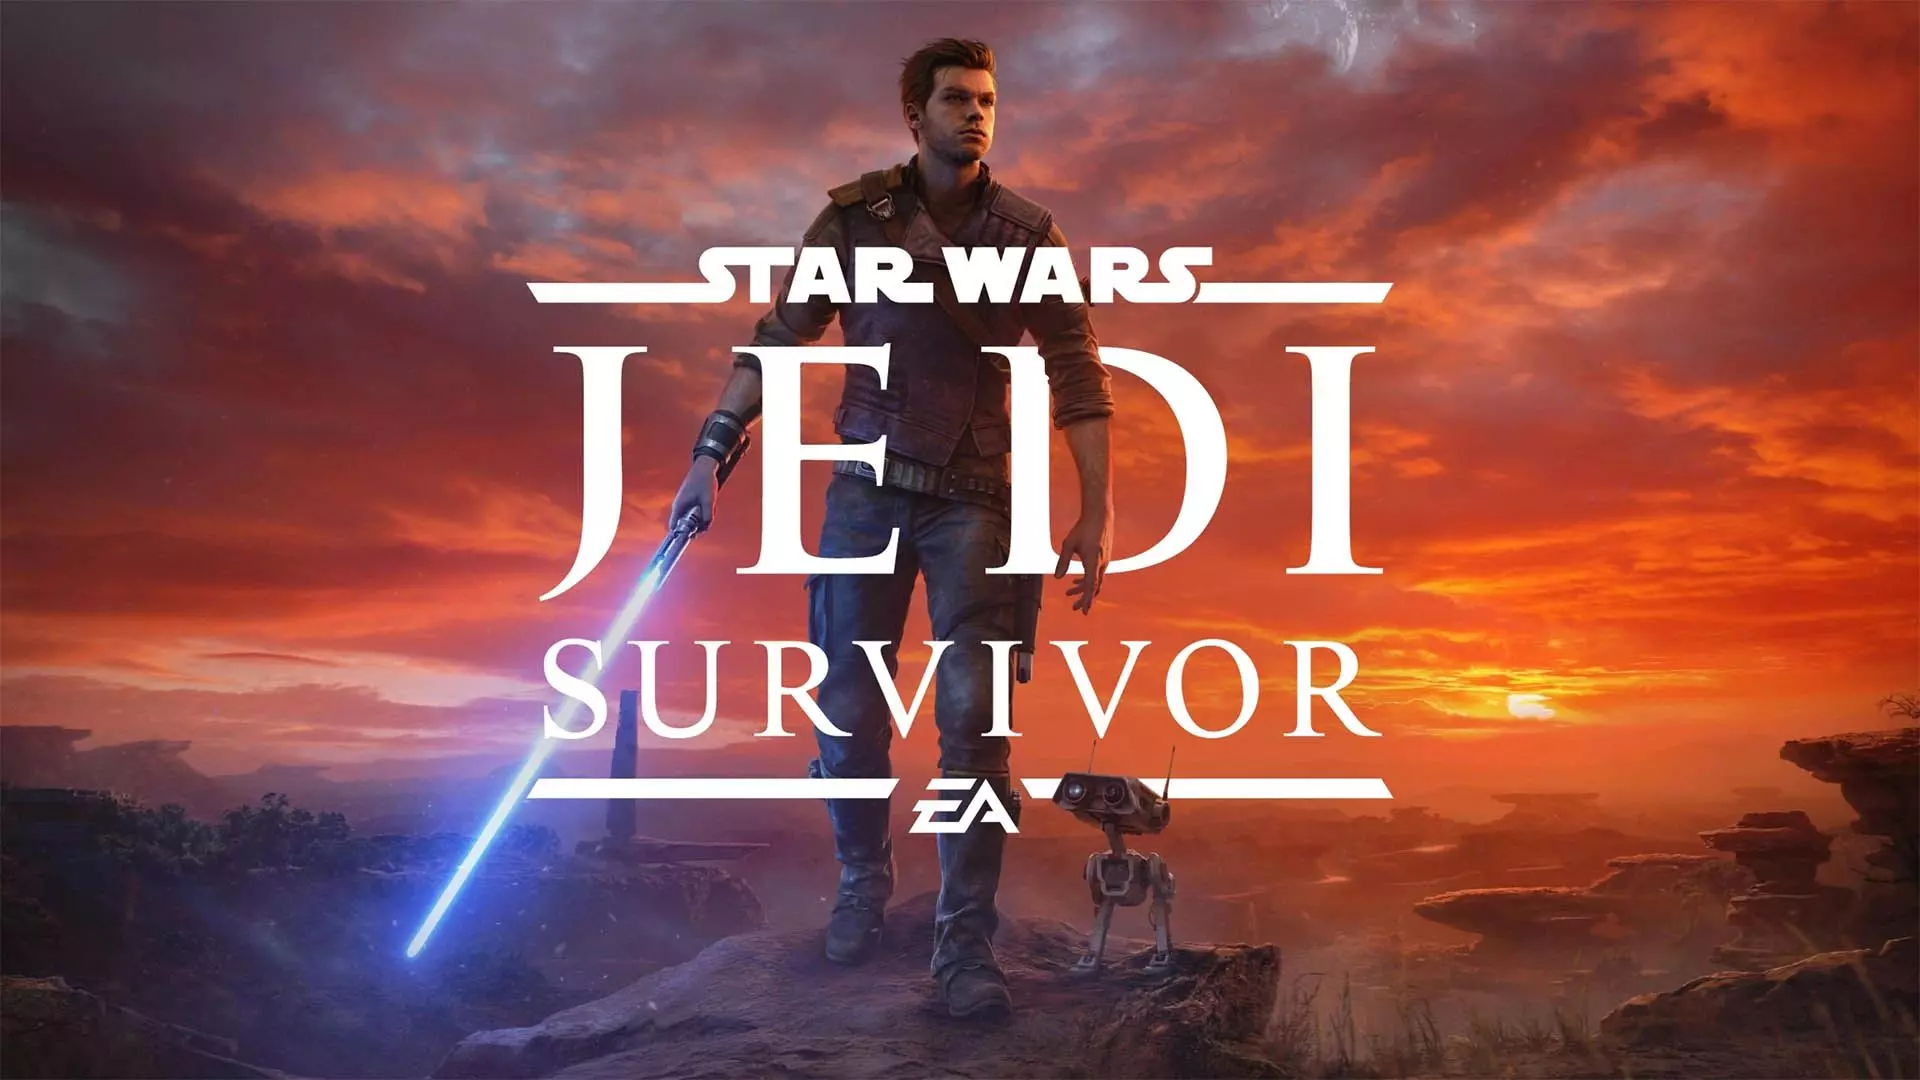 نیاز به دانلود فایل حجیم برای اجرای نسخه فیزیکی بازی Star Wars Jedi: Survivor